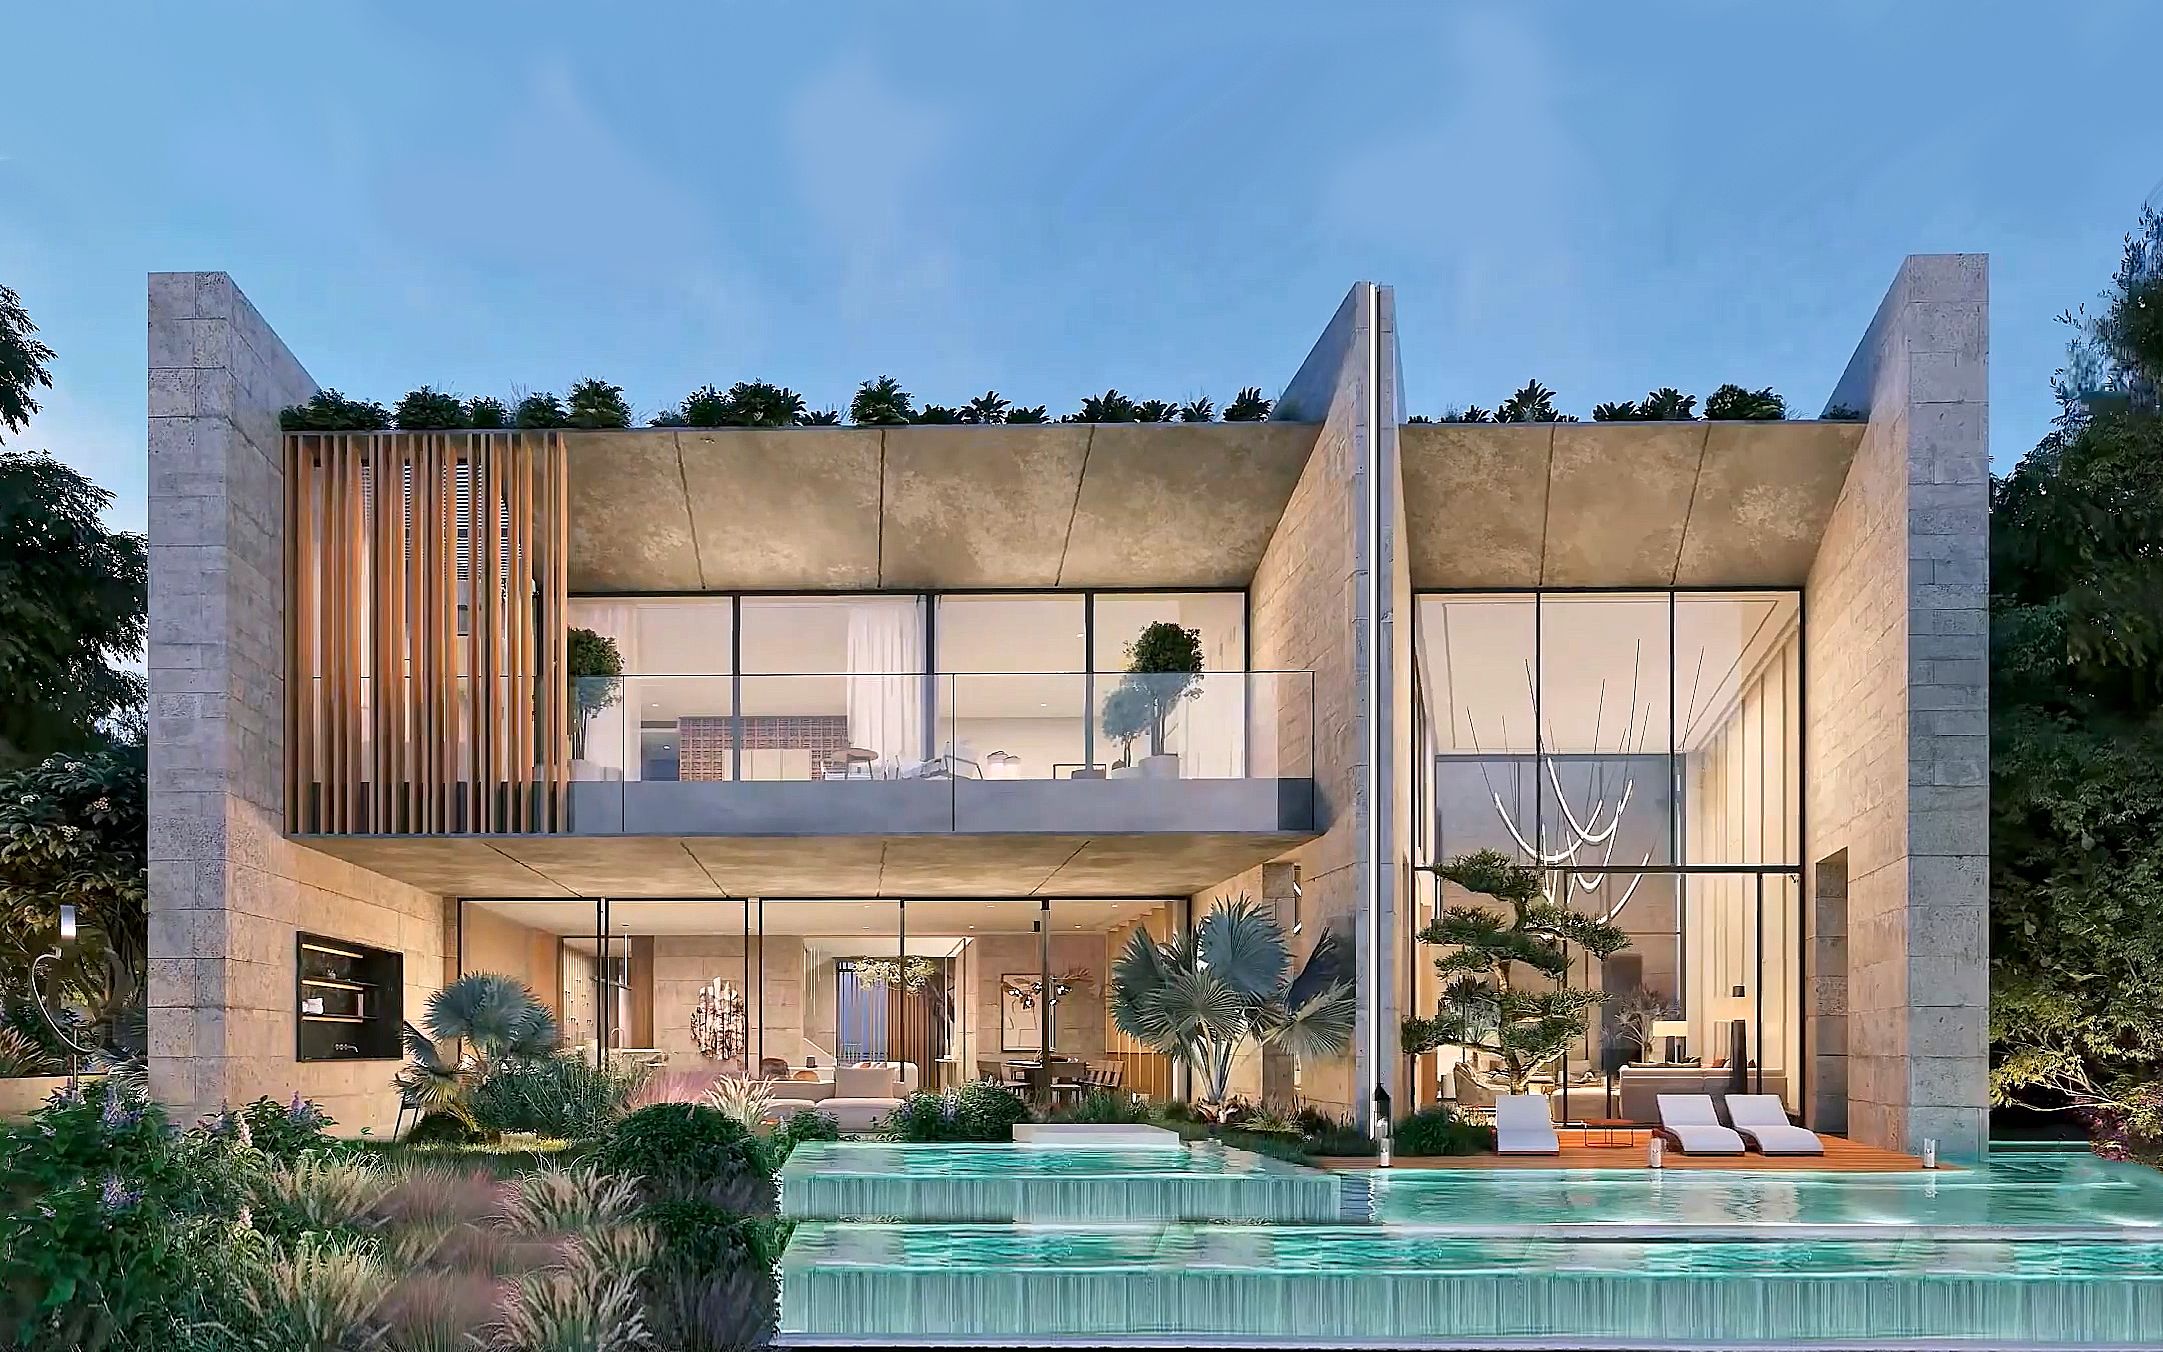 迪拜现代别墅设计案例,高端轻奢风装修设计,半室内瀑布景观令人心旷神